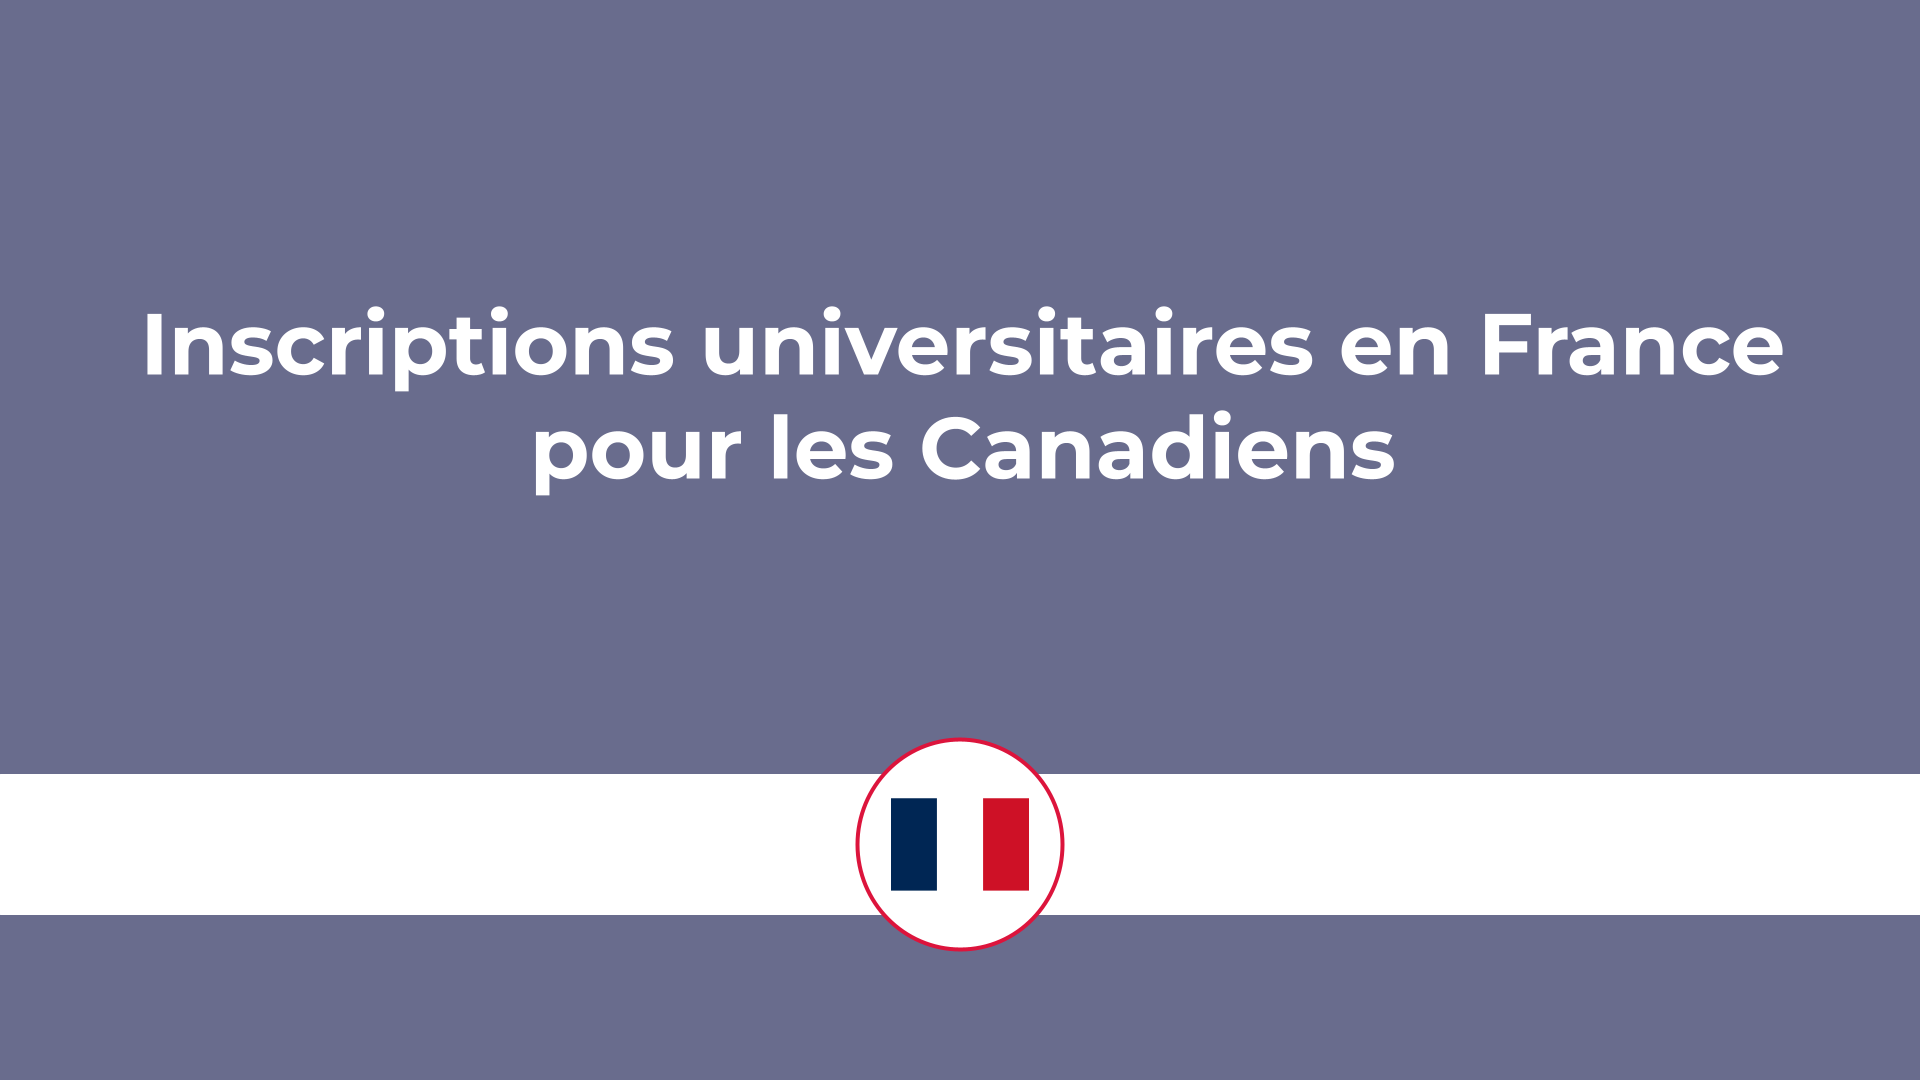 Inscriptions universitaires en France pour les Canadiens